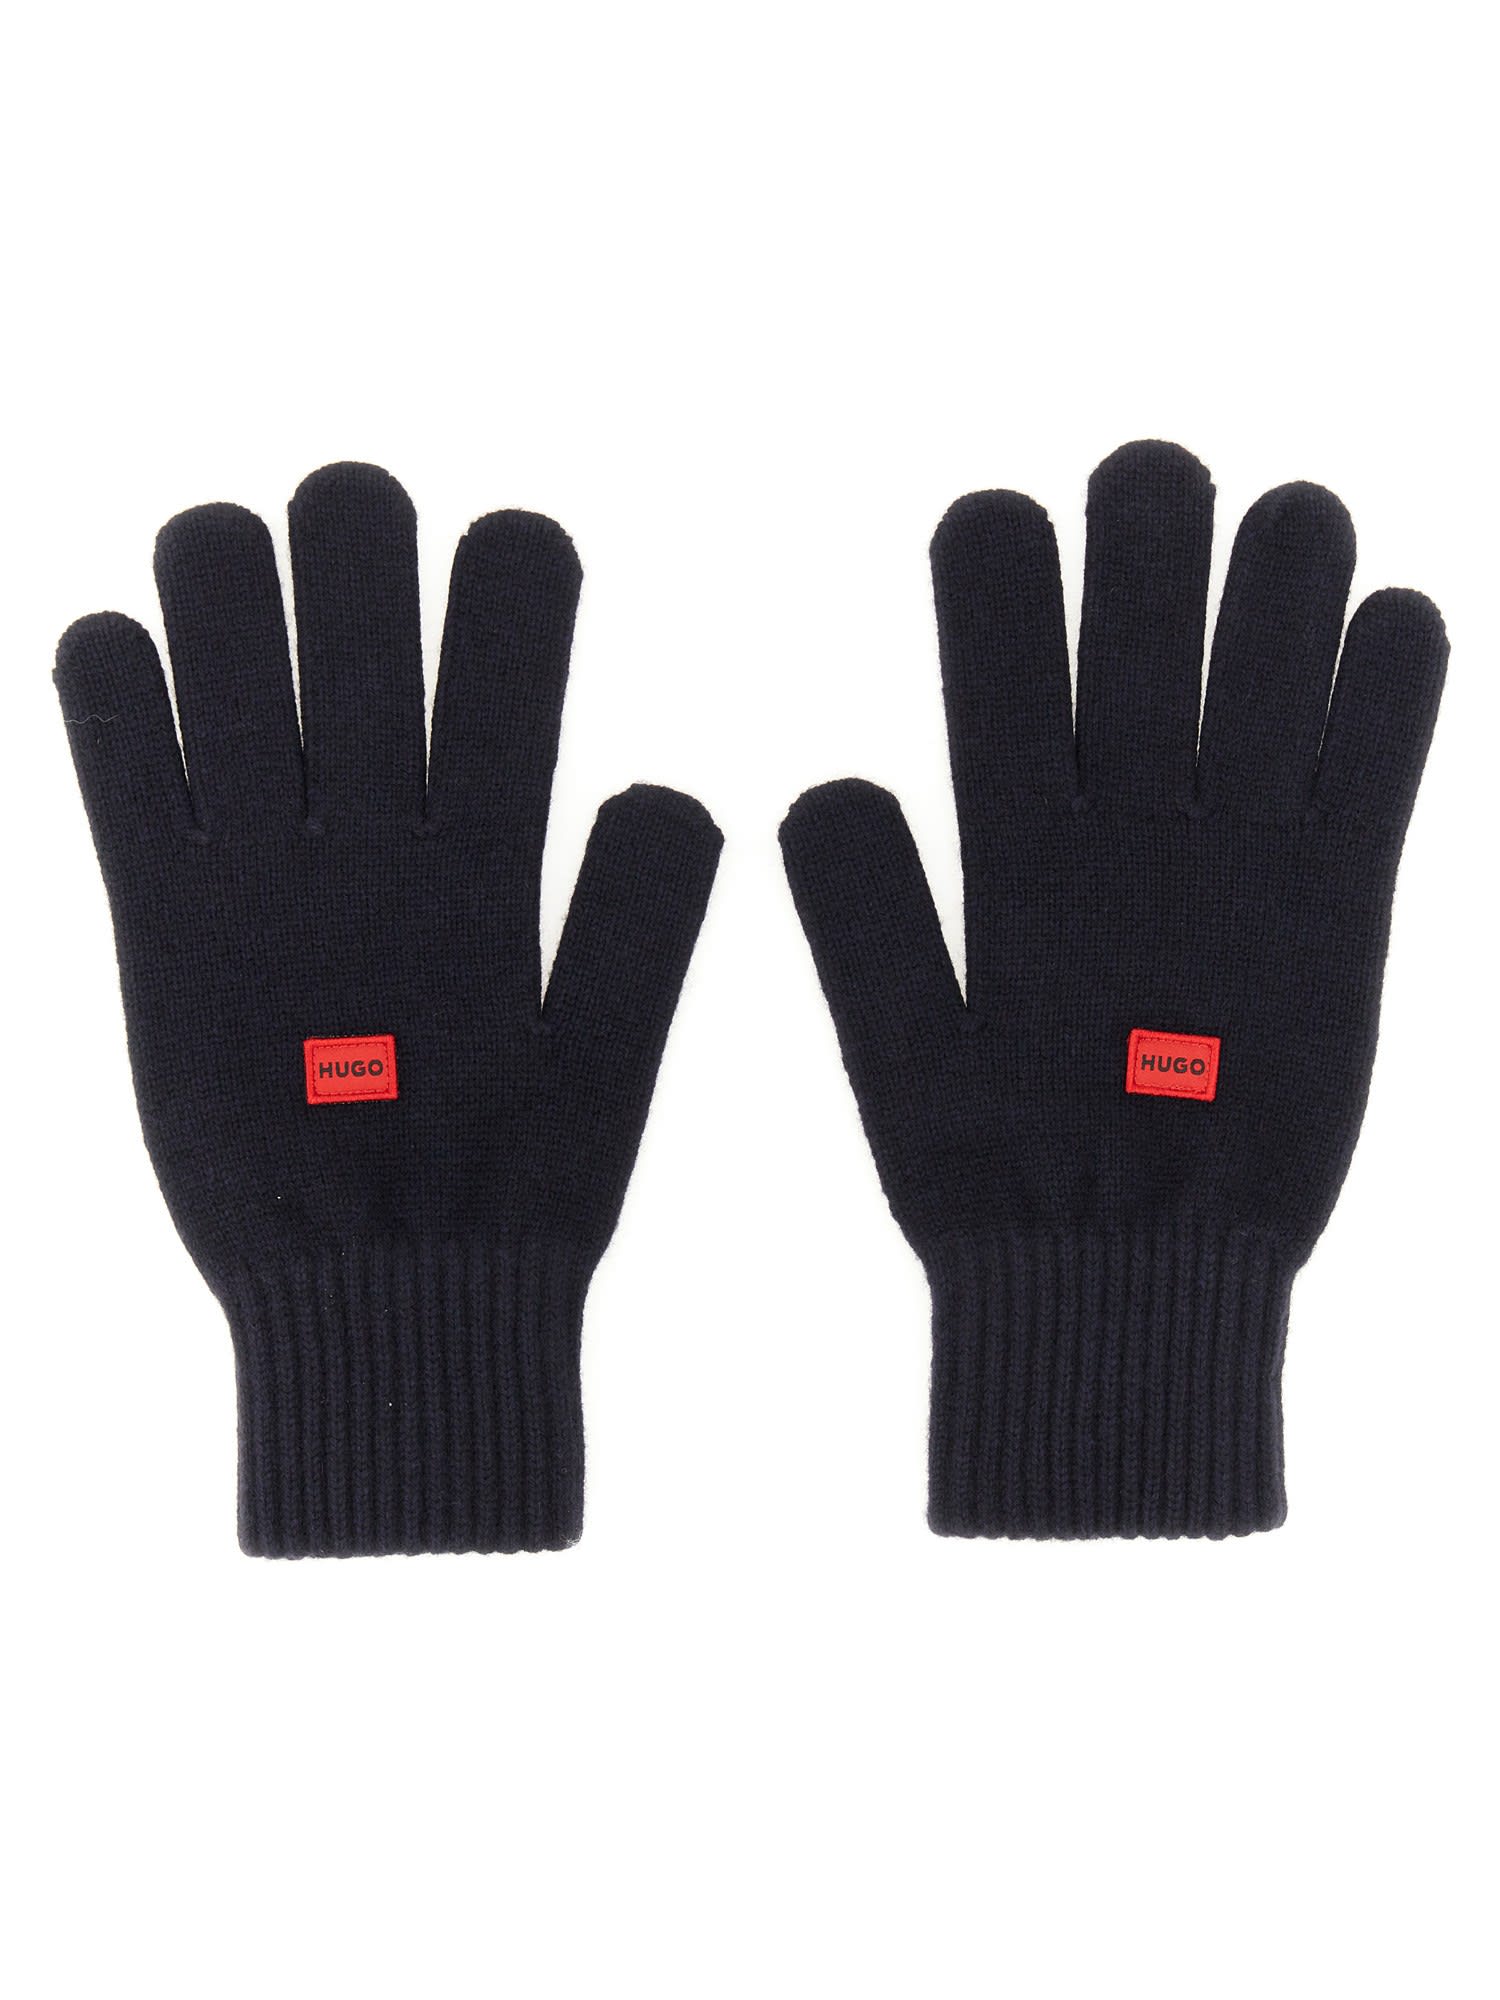 Hugo Boss Wool Blend Gloves